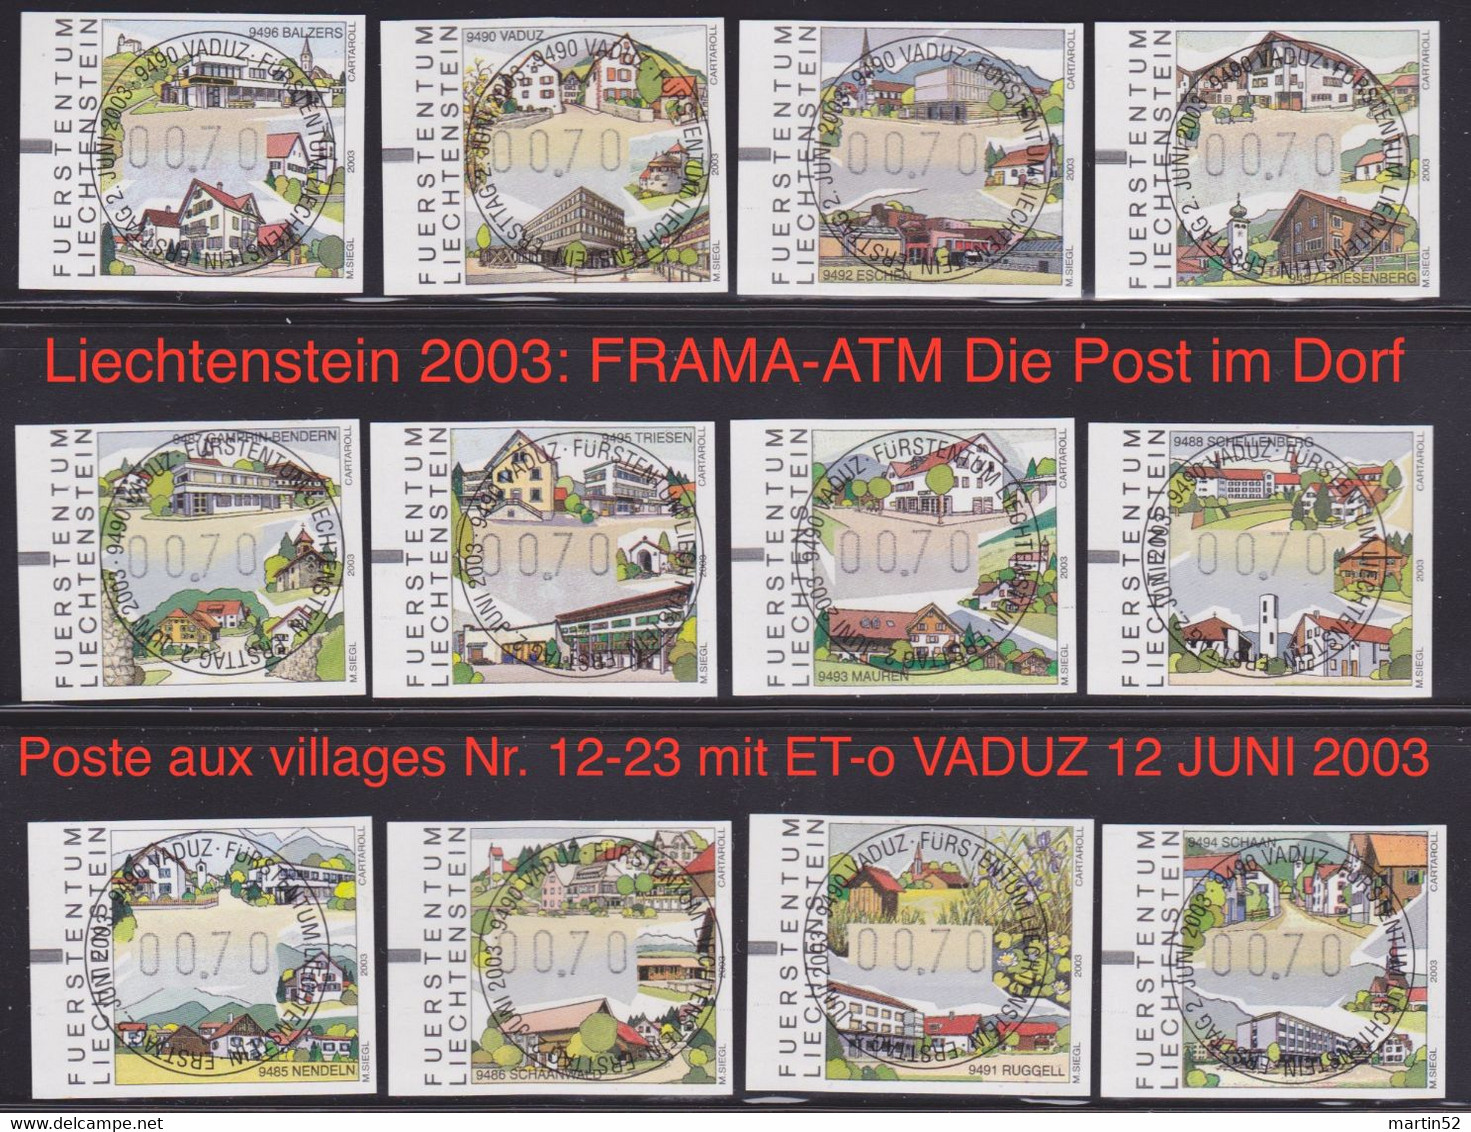 Liechtenstein 2003: FRAMA-ATM Die Post Im Dorf - Poste Aux Villages Nr. 12-23 Mit ET-o VADUZ 12 JUNI 2003 (Zu CHF 12.00) - Macchine Per Obliterare (EMA)